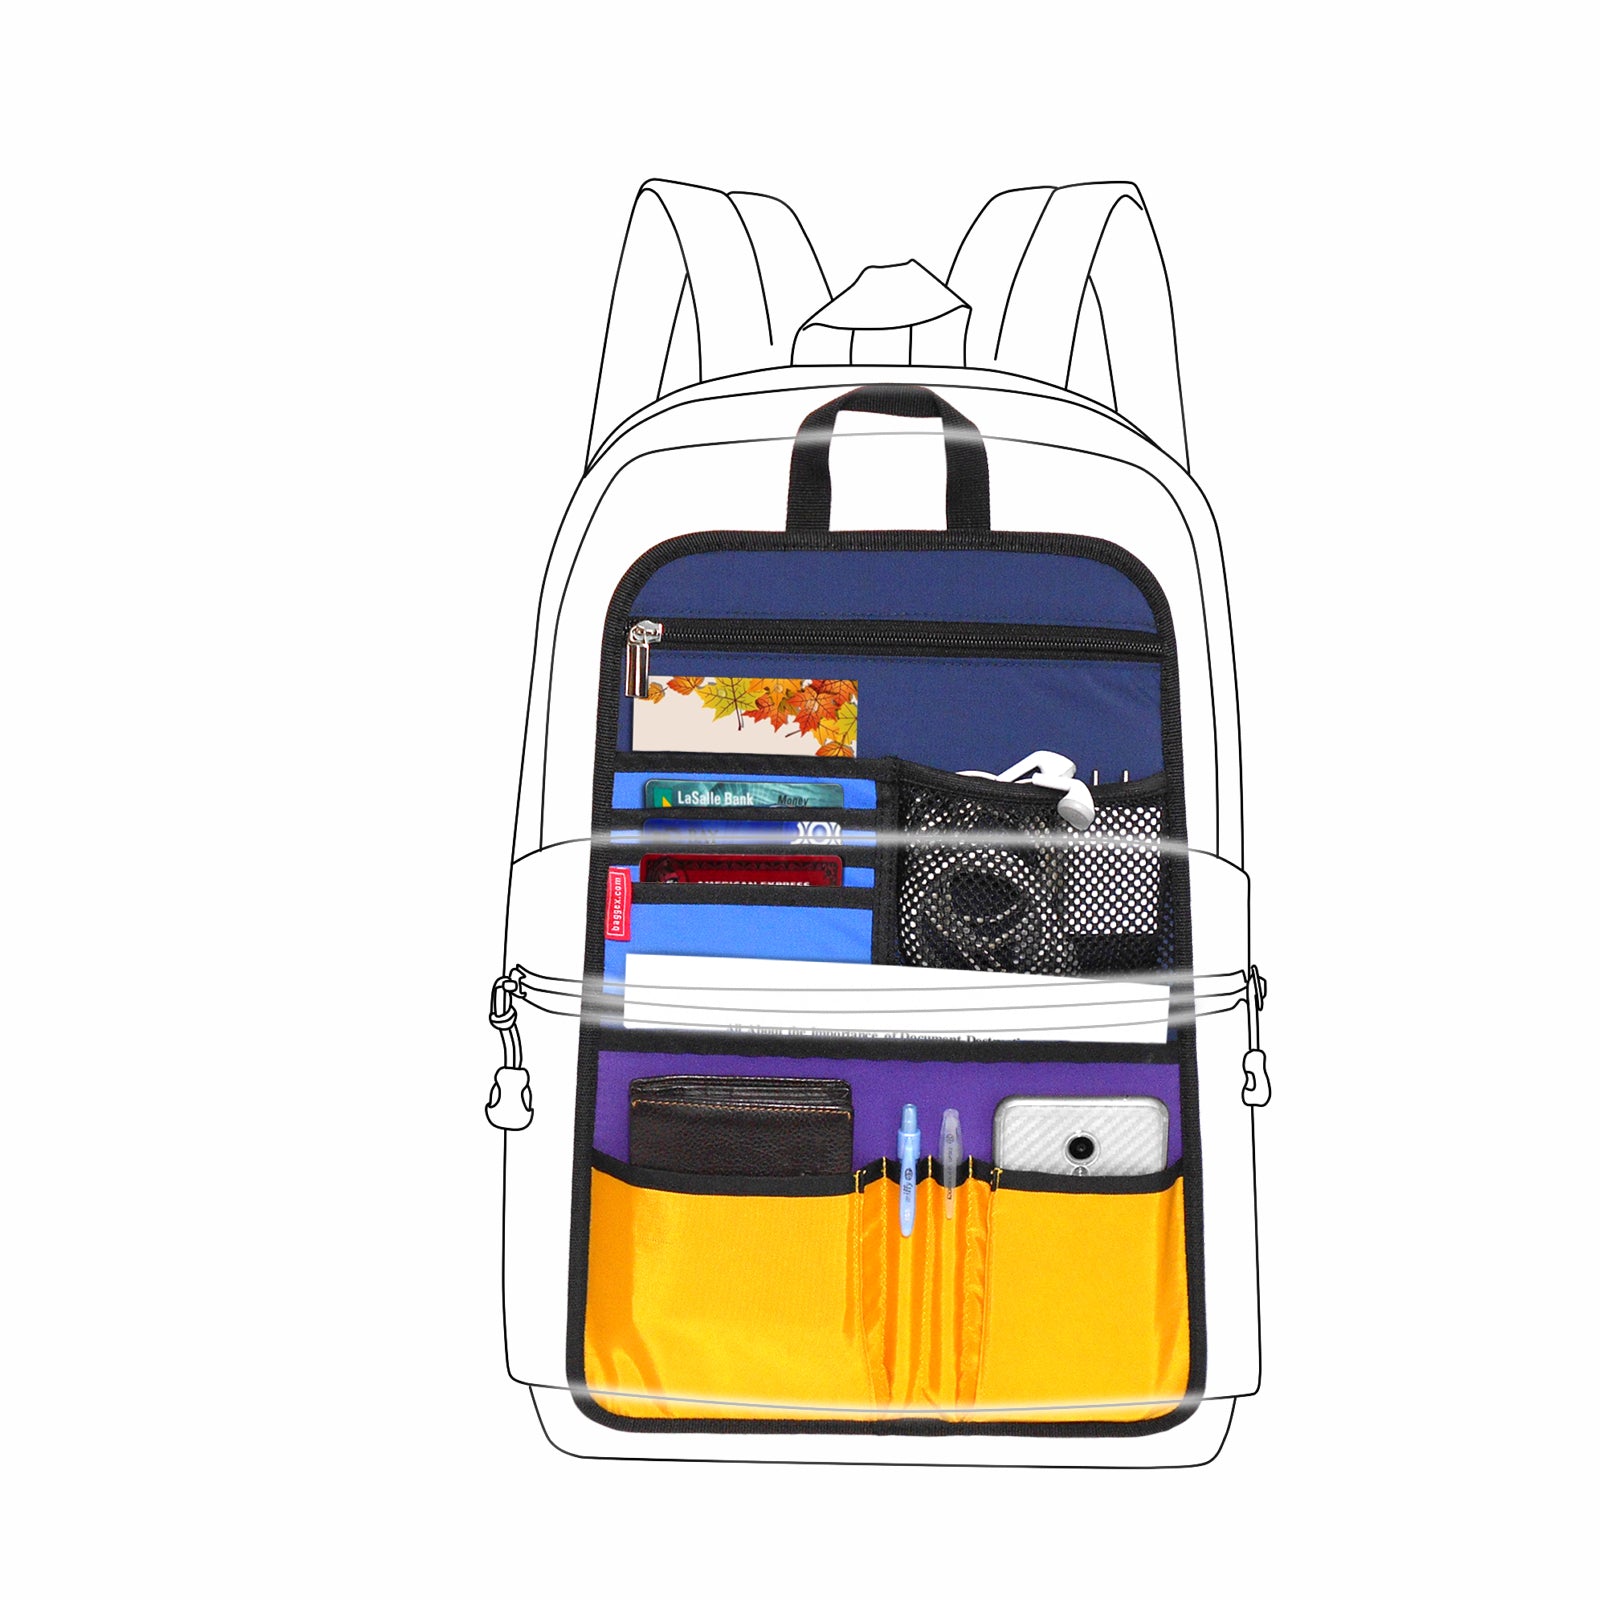 Insert Organizer Backpack, Organizer Bag Insert Backpack